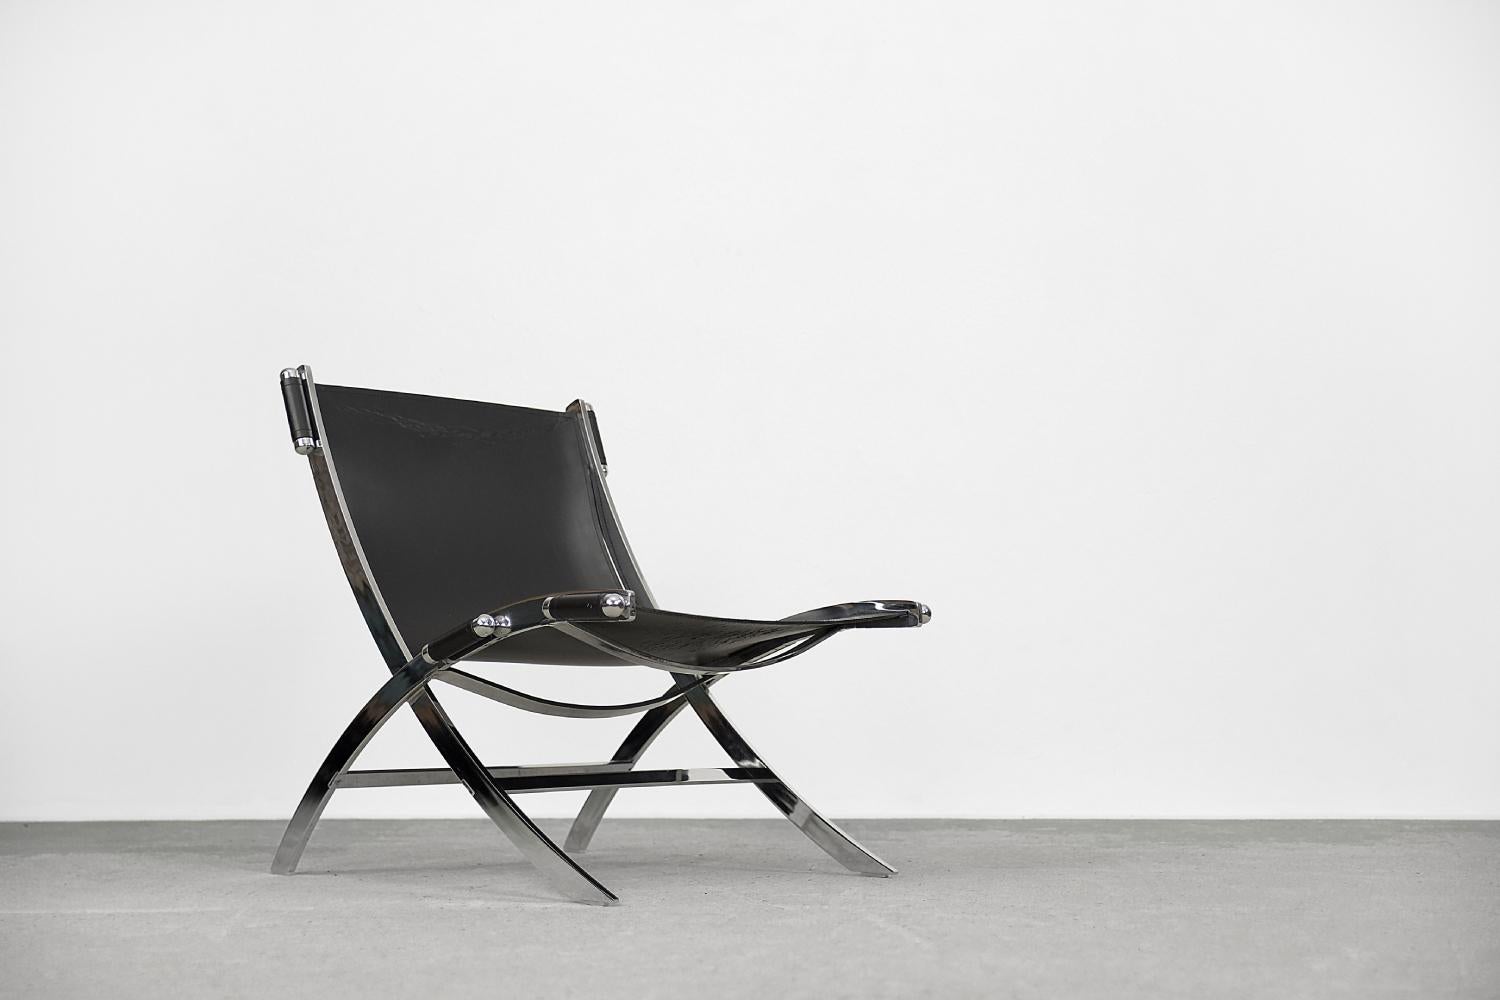 Cette chaise Timeless, lourde et solide mais en même temps élégante, a été conçue par Antonio Citterio pour la manufacture italienne Flexform dans les années 1980. Cette chaise a une structure en acier chromé en forme de X sur laquelle du cuir